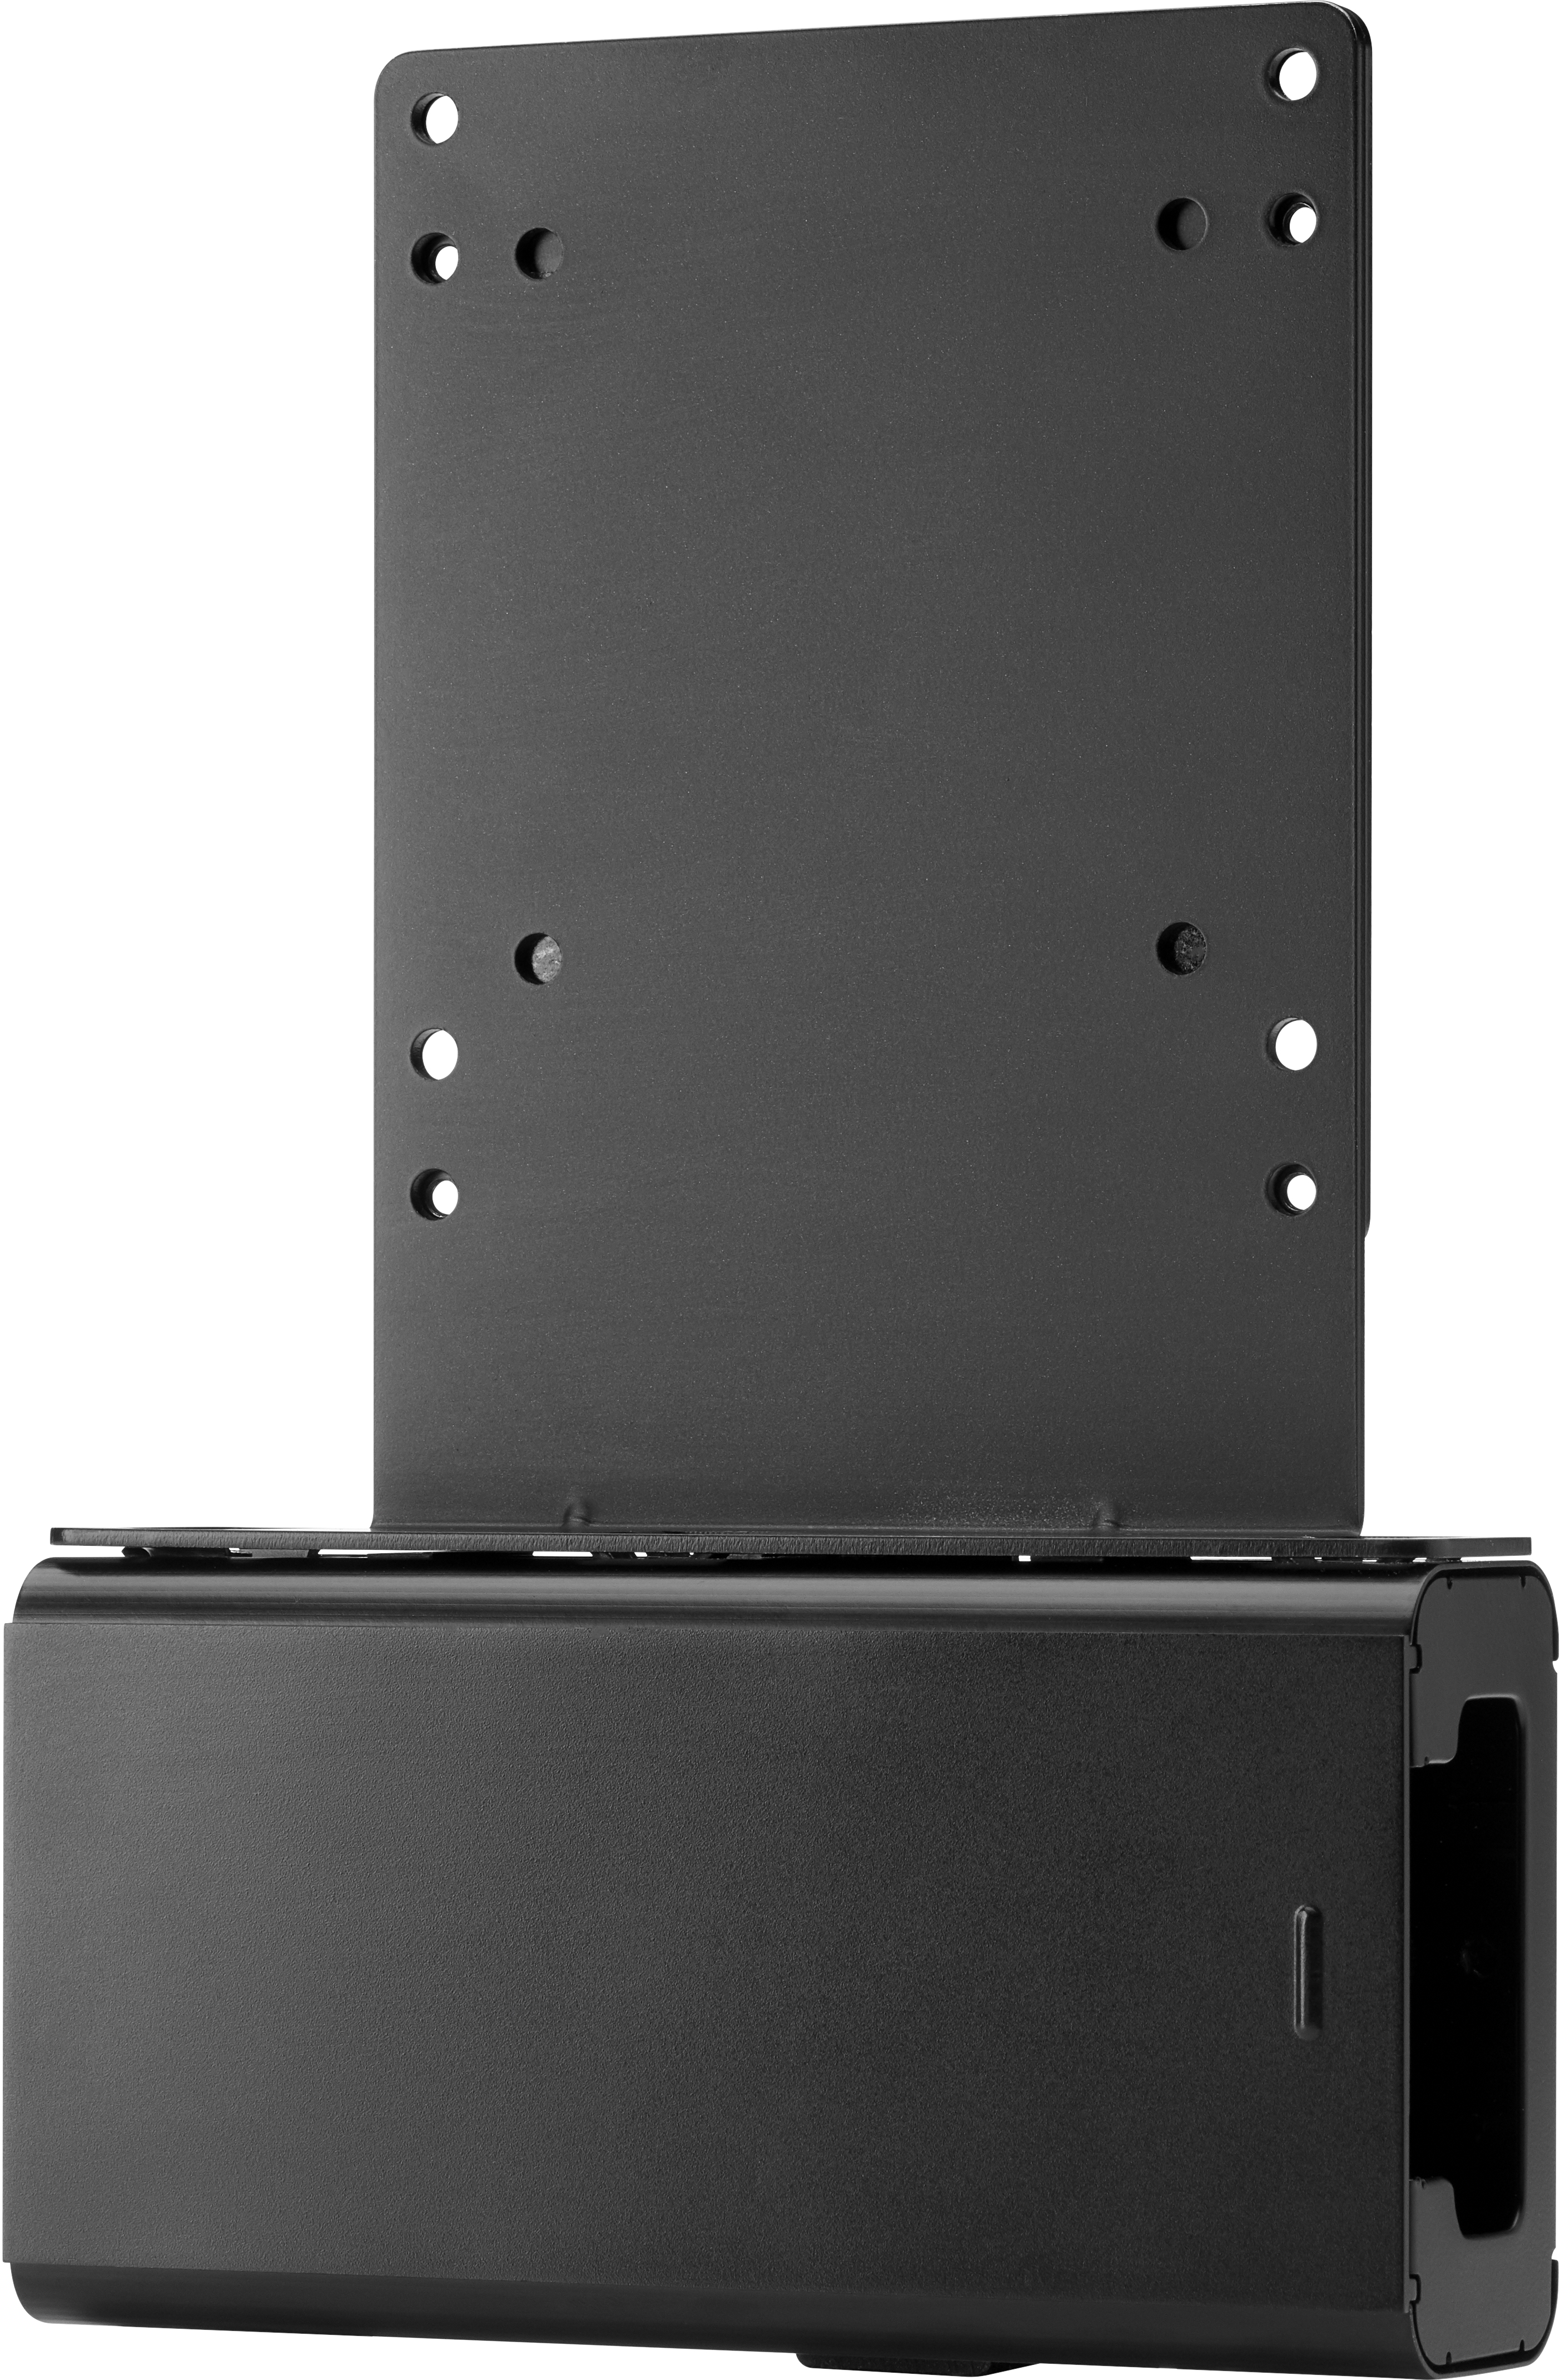 HP B300 - Befestigungskit (Montageklammer) - für Desktop Mini